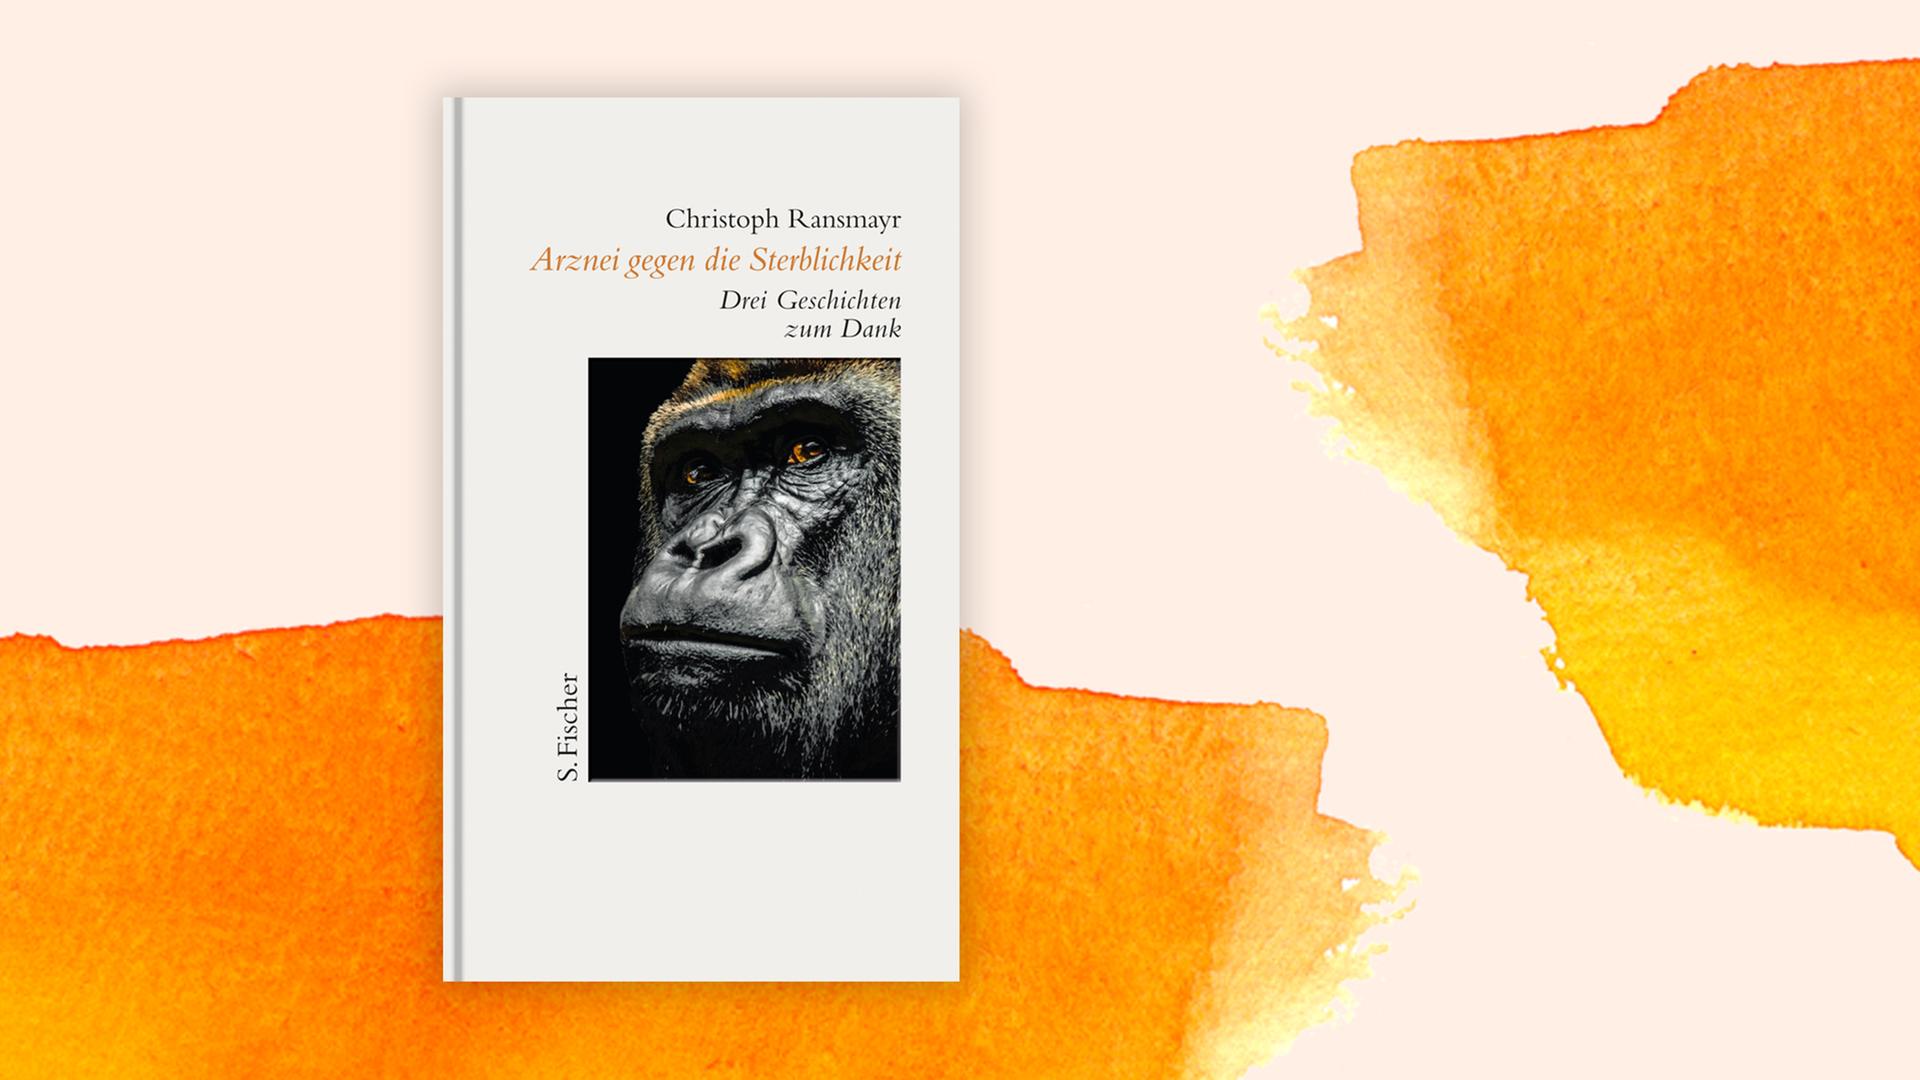 Das Cover ist hellgrau, darauf ist neben Autor und Titel das Porträt eines Affen zu sehen.